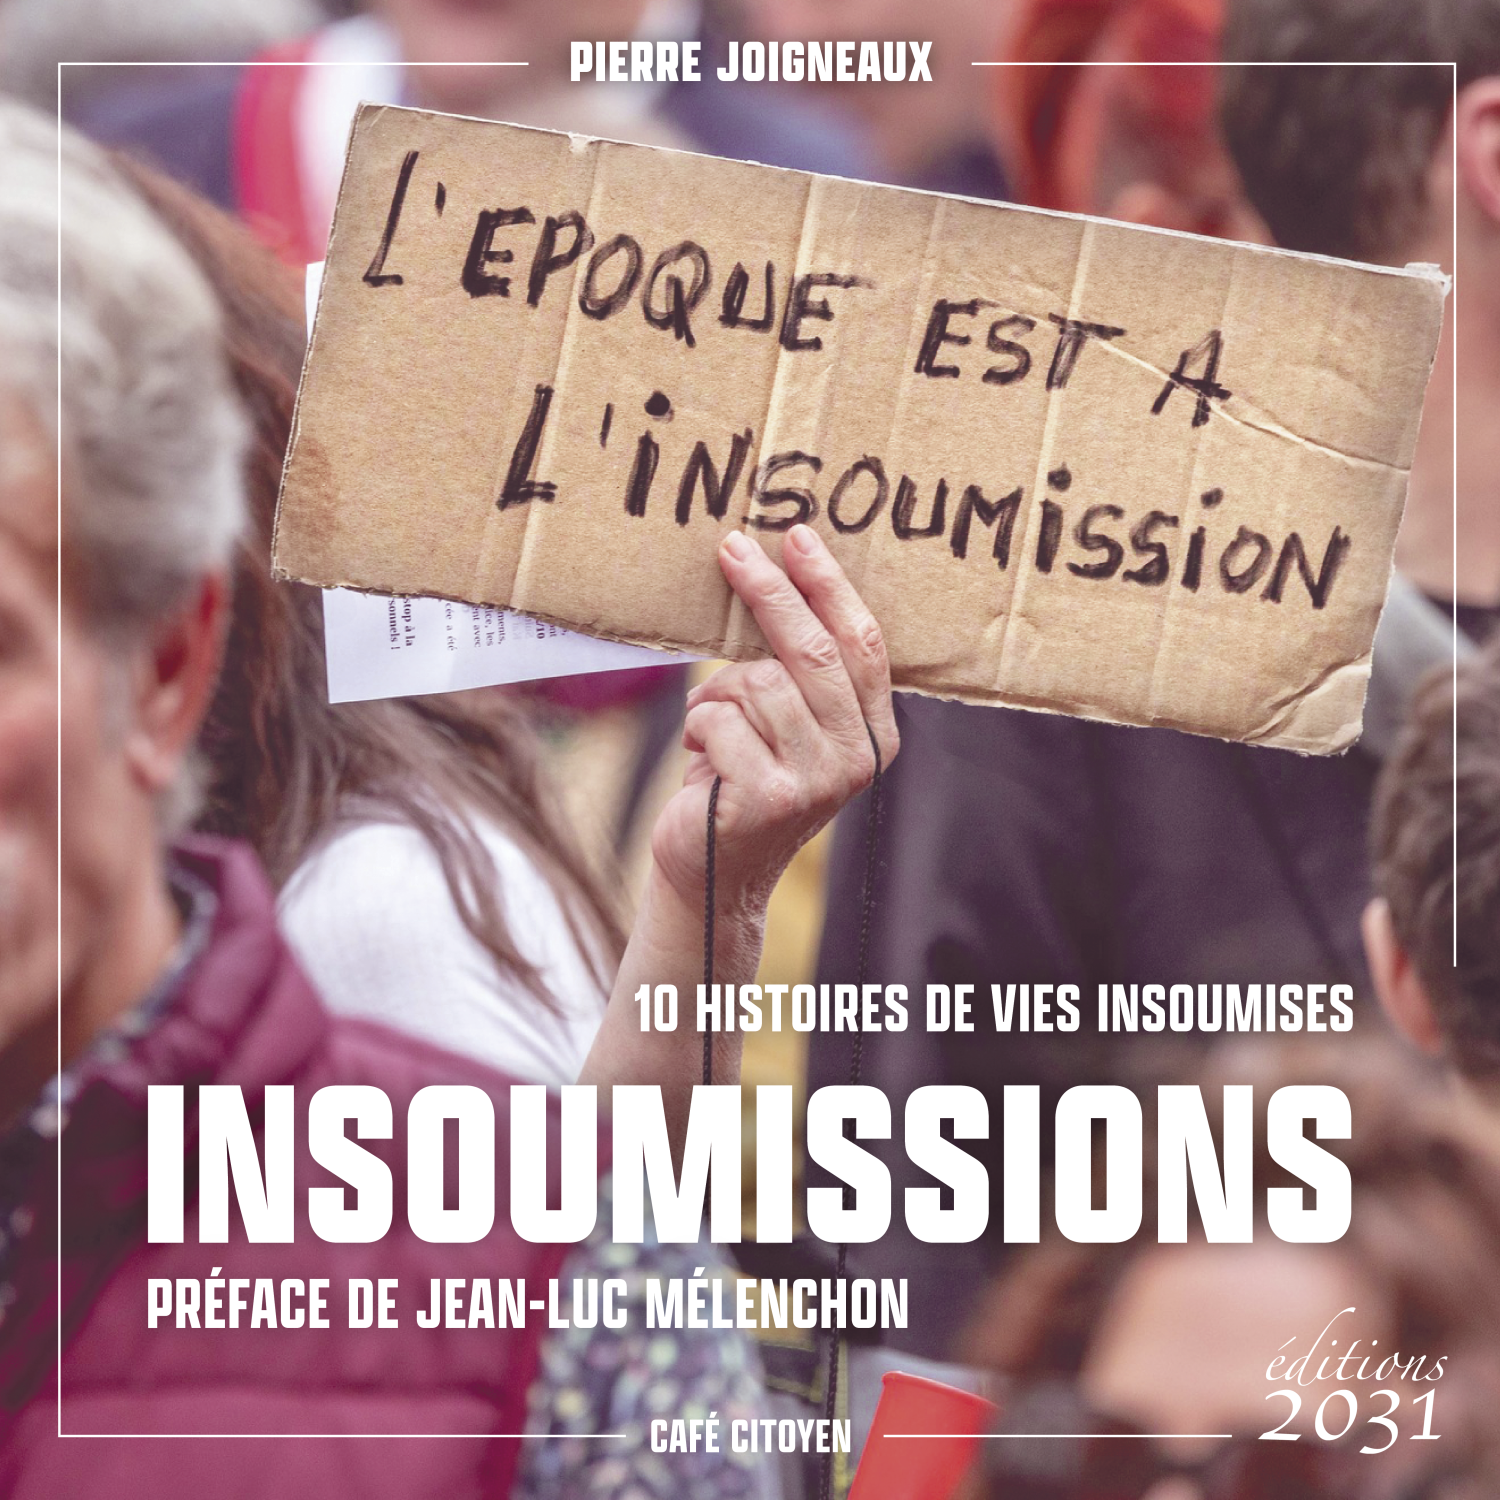 Insoumissions 10 histoires de vies insoumises - Pierre joigneaux